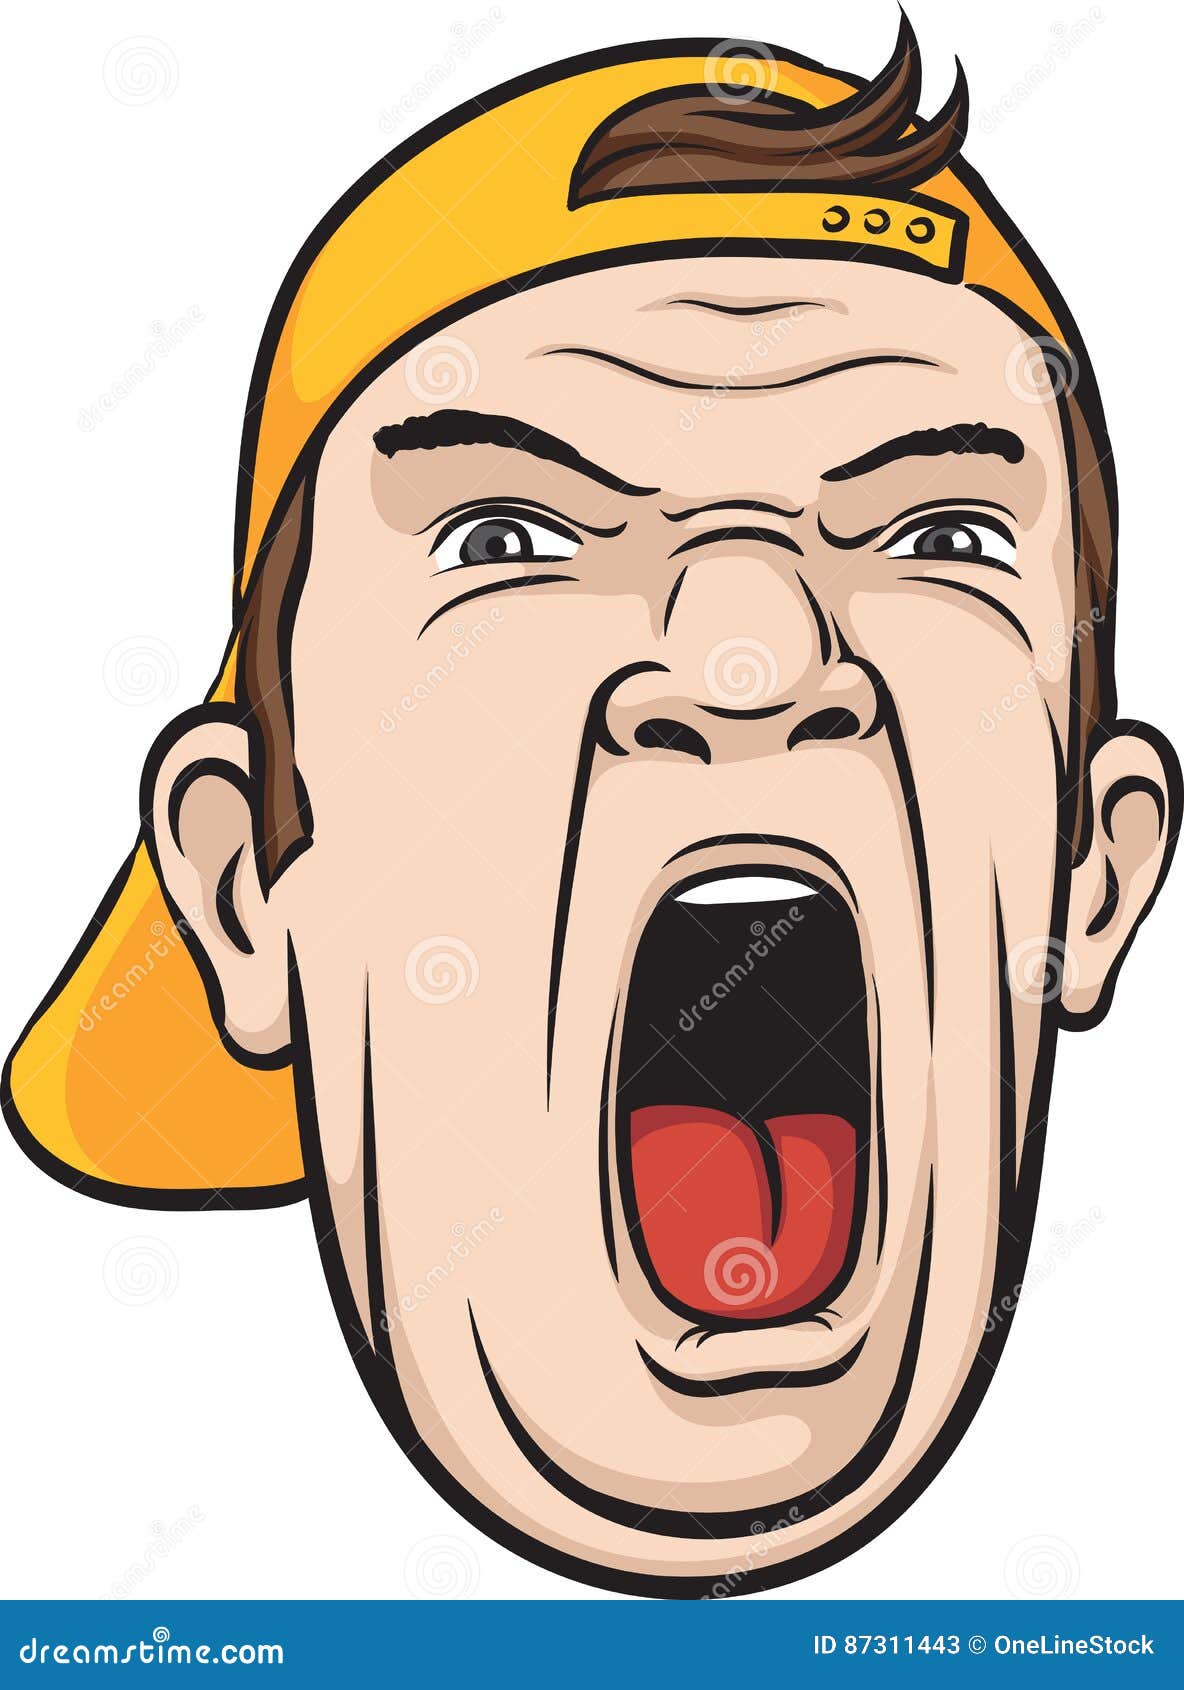 Screaming man face stock vector. Illustration of cartoon - 87311443